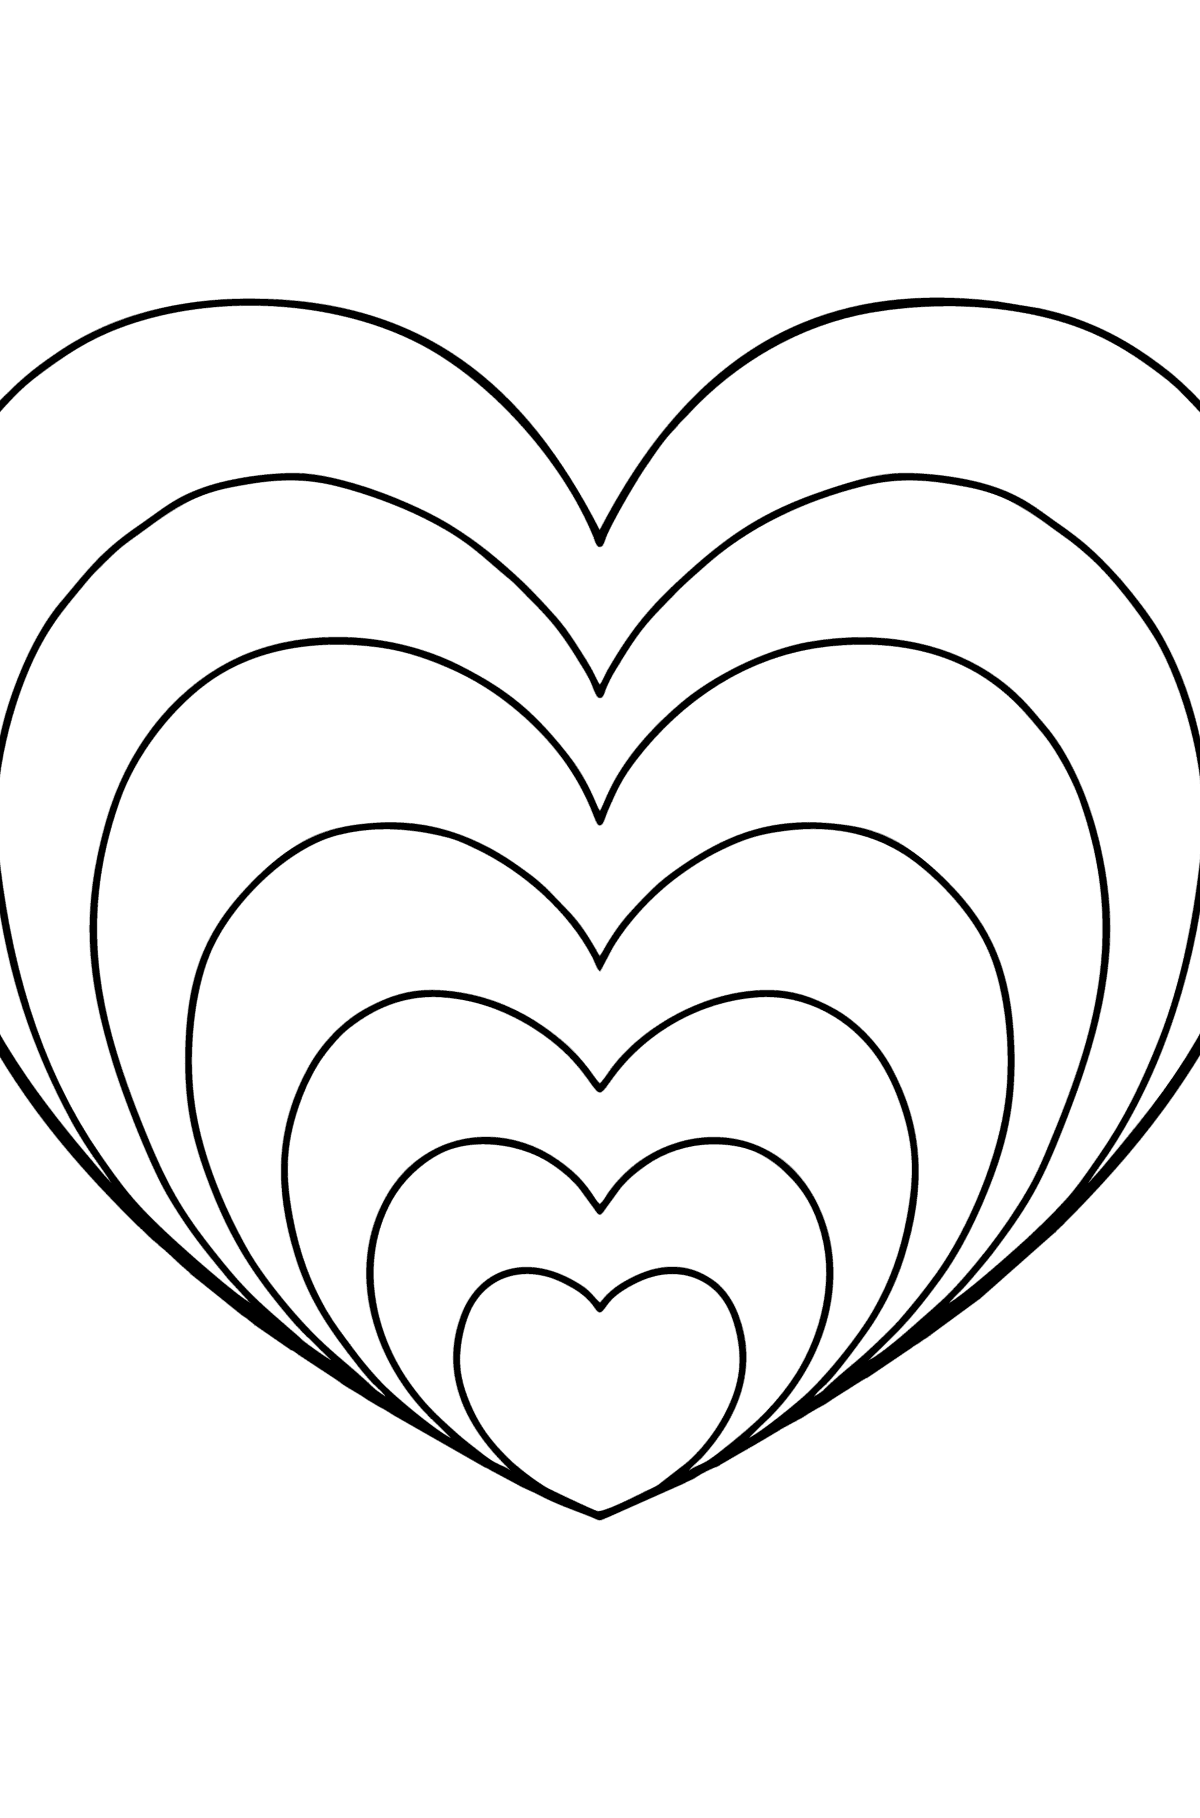 Målarbild Zen stil hjärta - Målarbilder För barn